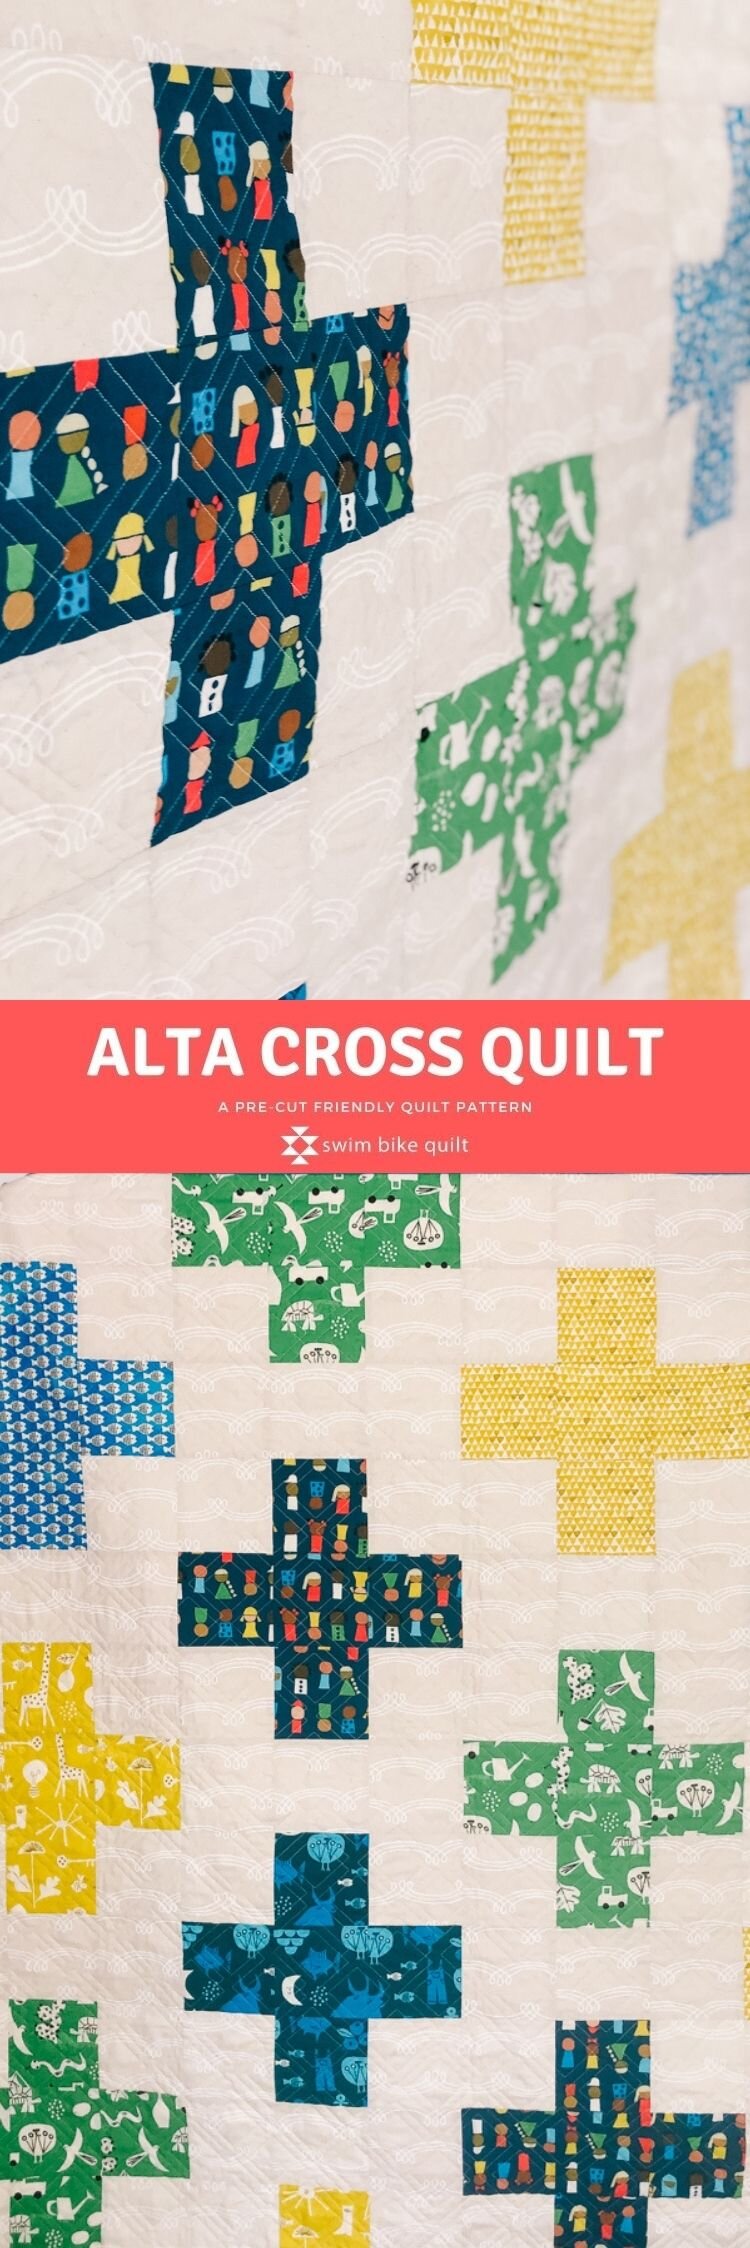 Alta_Cross_Quilt_Pattern_SwimBikeQuilt_KatieBlakesley1.jpg